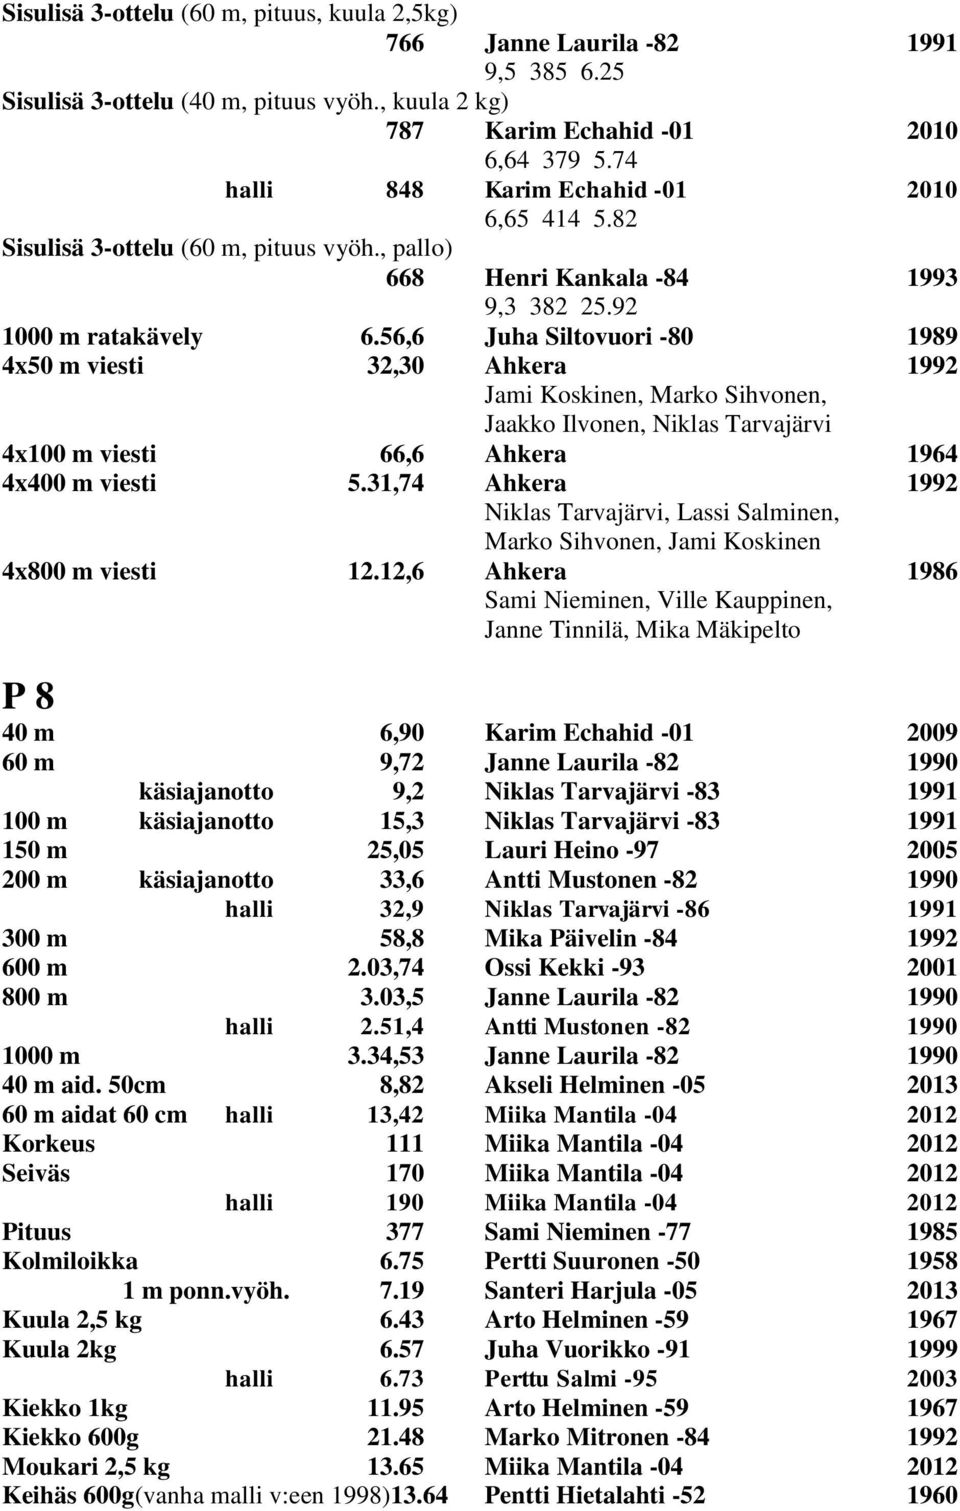 56,6 Juha Siltovuori -80 1989 4x50 m viesti 32,30 Ahkera 1992 Jami Koskinen, Marko Sihvonen, Jaakko Ilvonen, Niklas Tarvajärvi 4x100 m viesti 66,6 Ahkera 1964 4x400 m viesti 5.